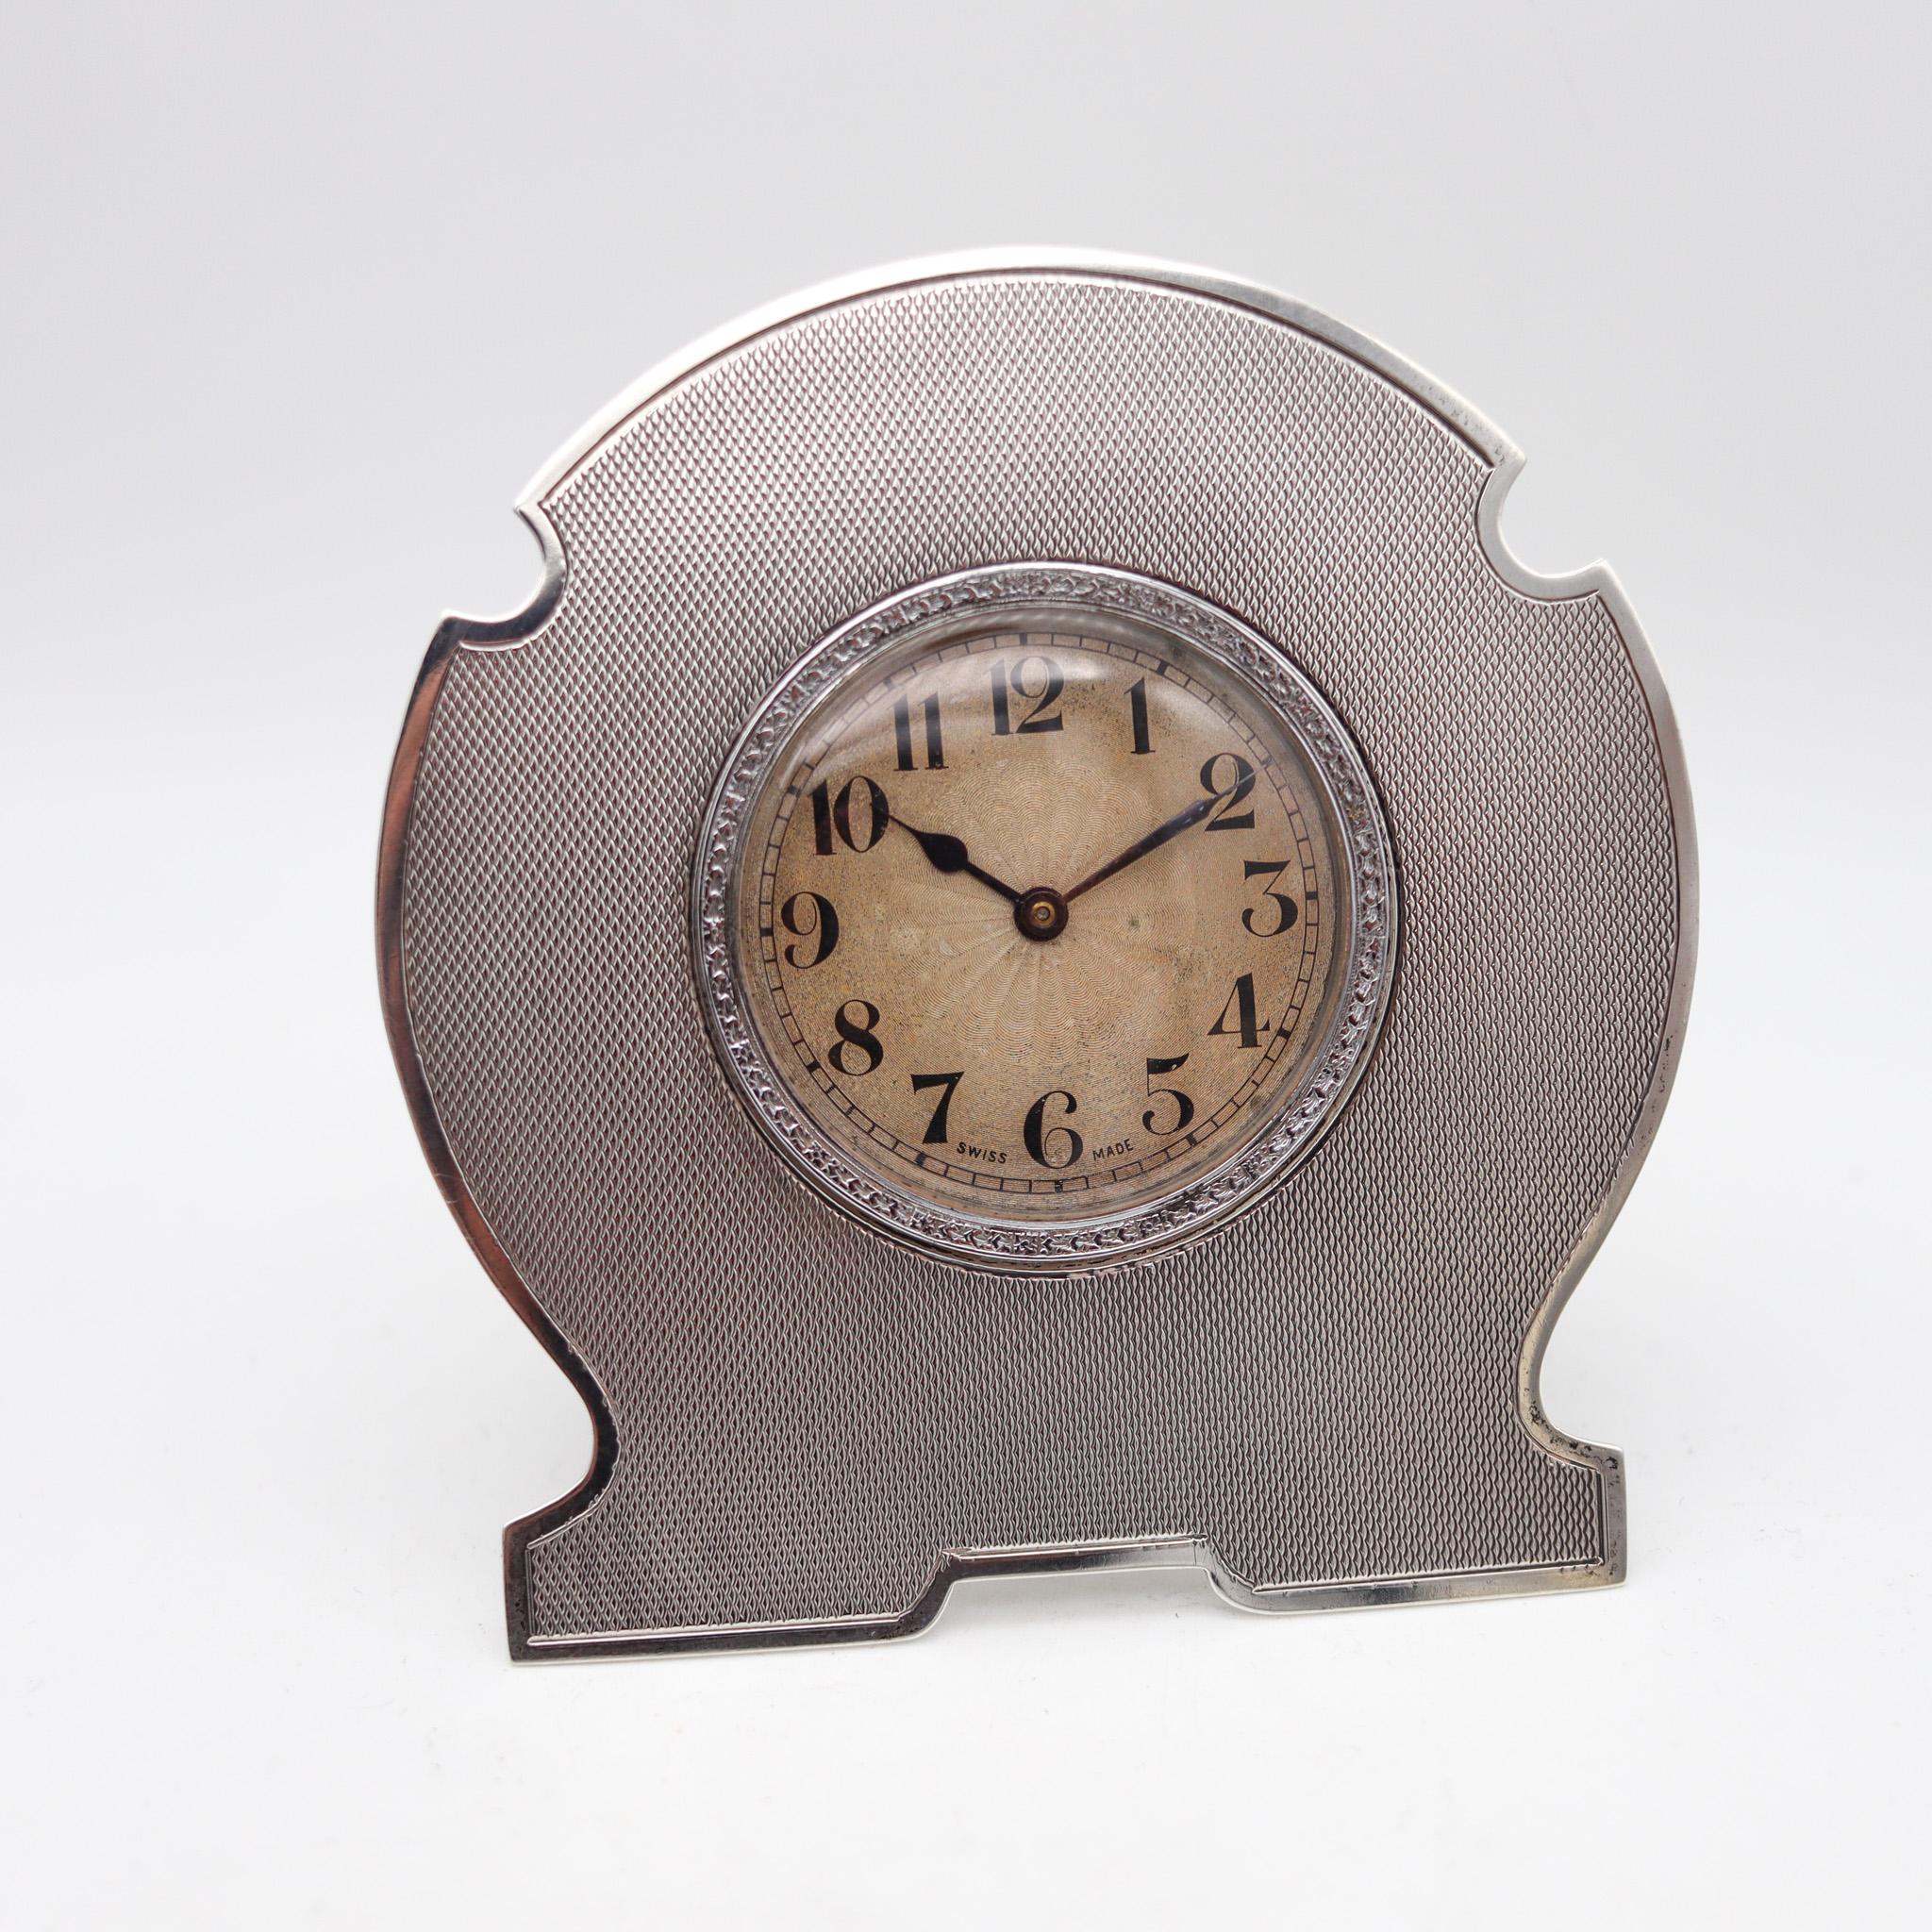 Eine Edwardianische Miniatur-Reiseuhr.

Sehr schöne antike Tischuhr, die zu Beginn des 20. Jahrhunderts in Genf in der Schweiz hergestellt wurde. Diese kleine antike Uhr wurde mit außergewöhnlichen Details während der Edwardianischen Periode in den